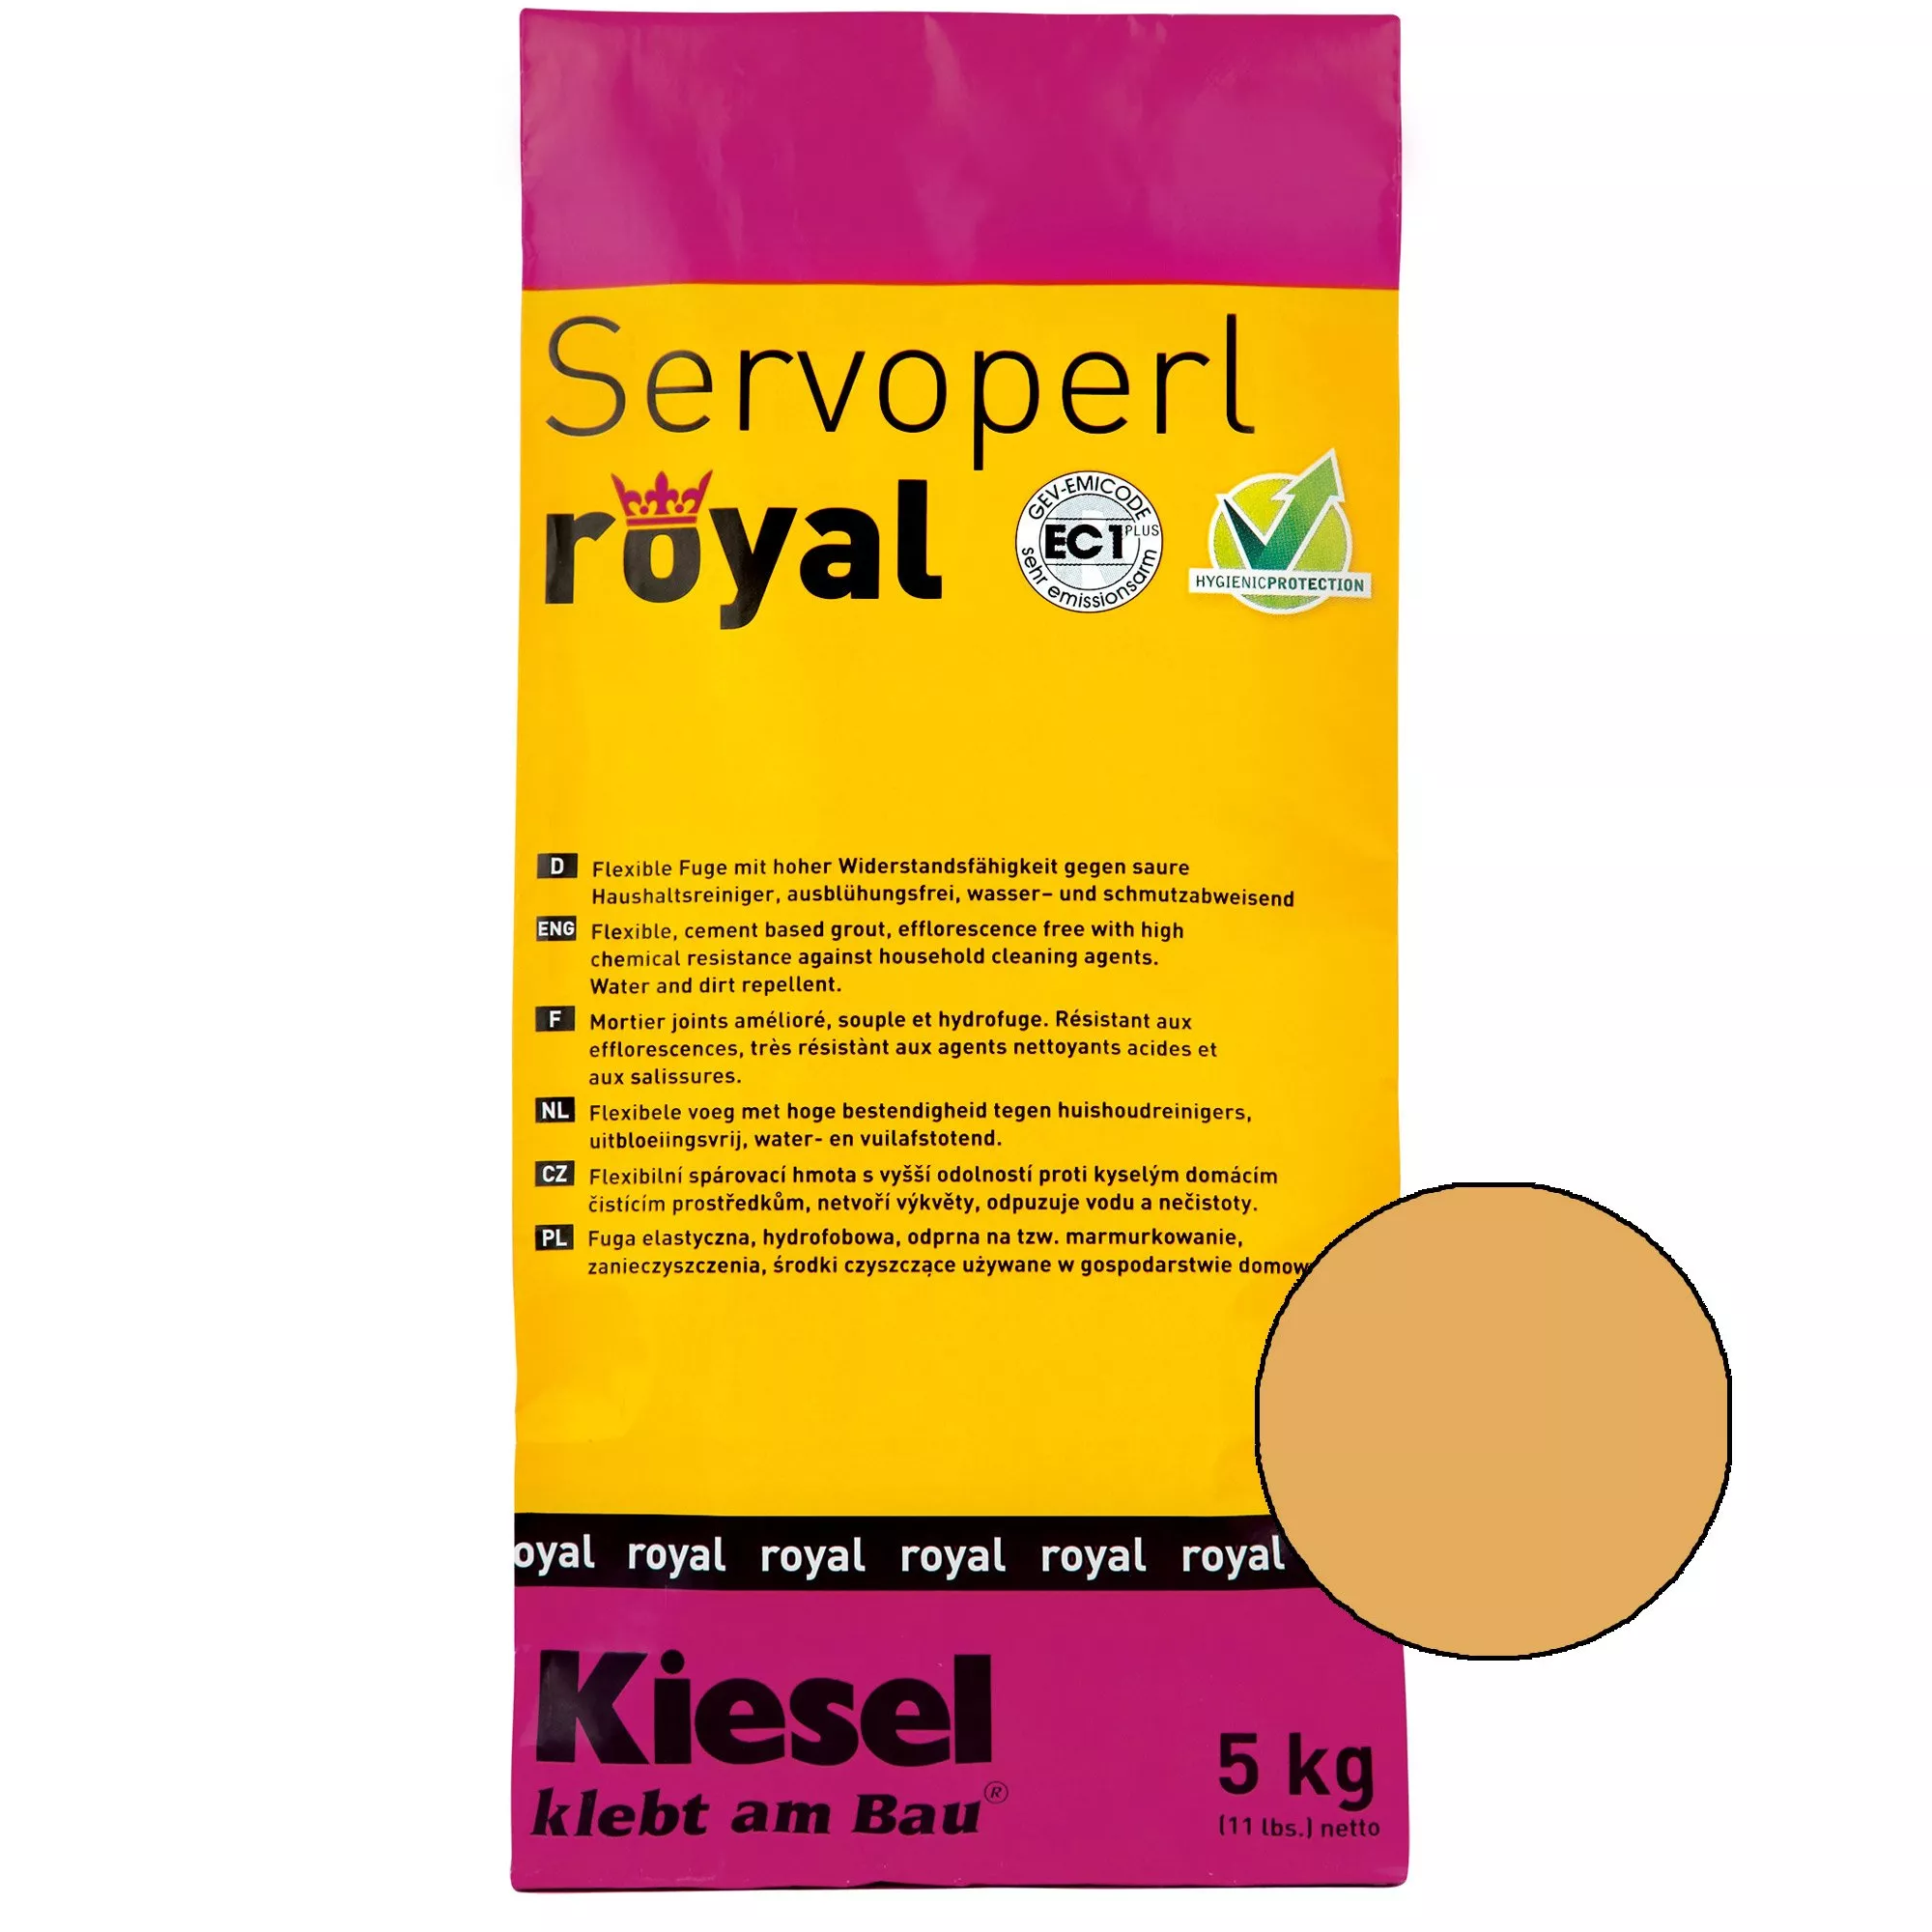 Kiesel Servoperl royal - смес за фуги-5кг Сахара